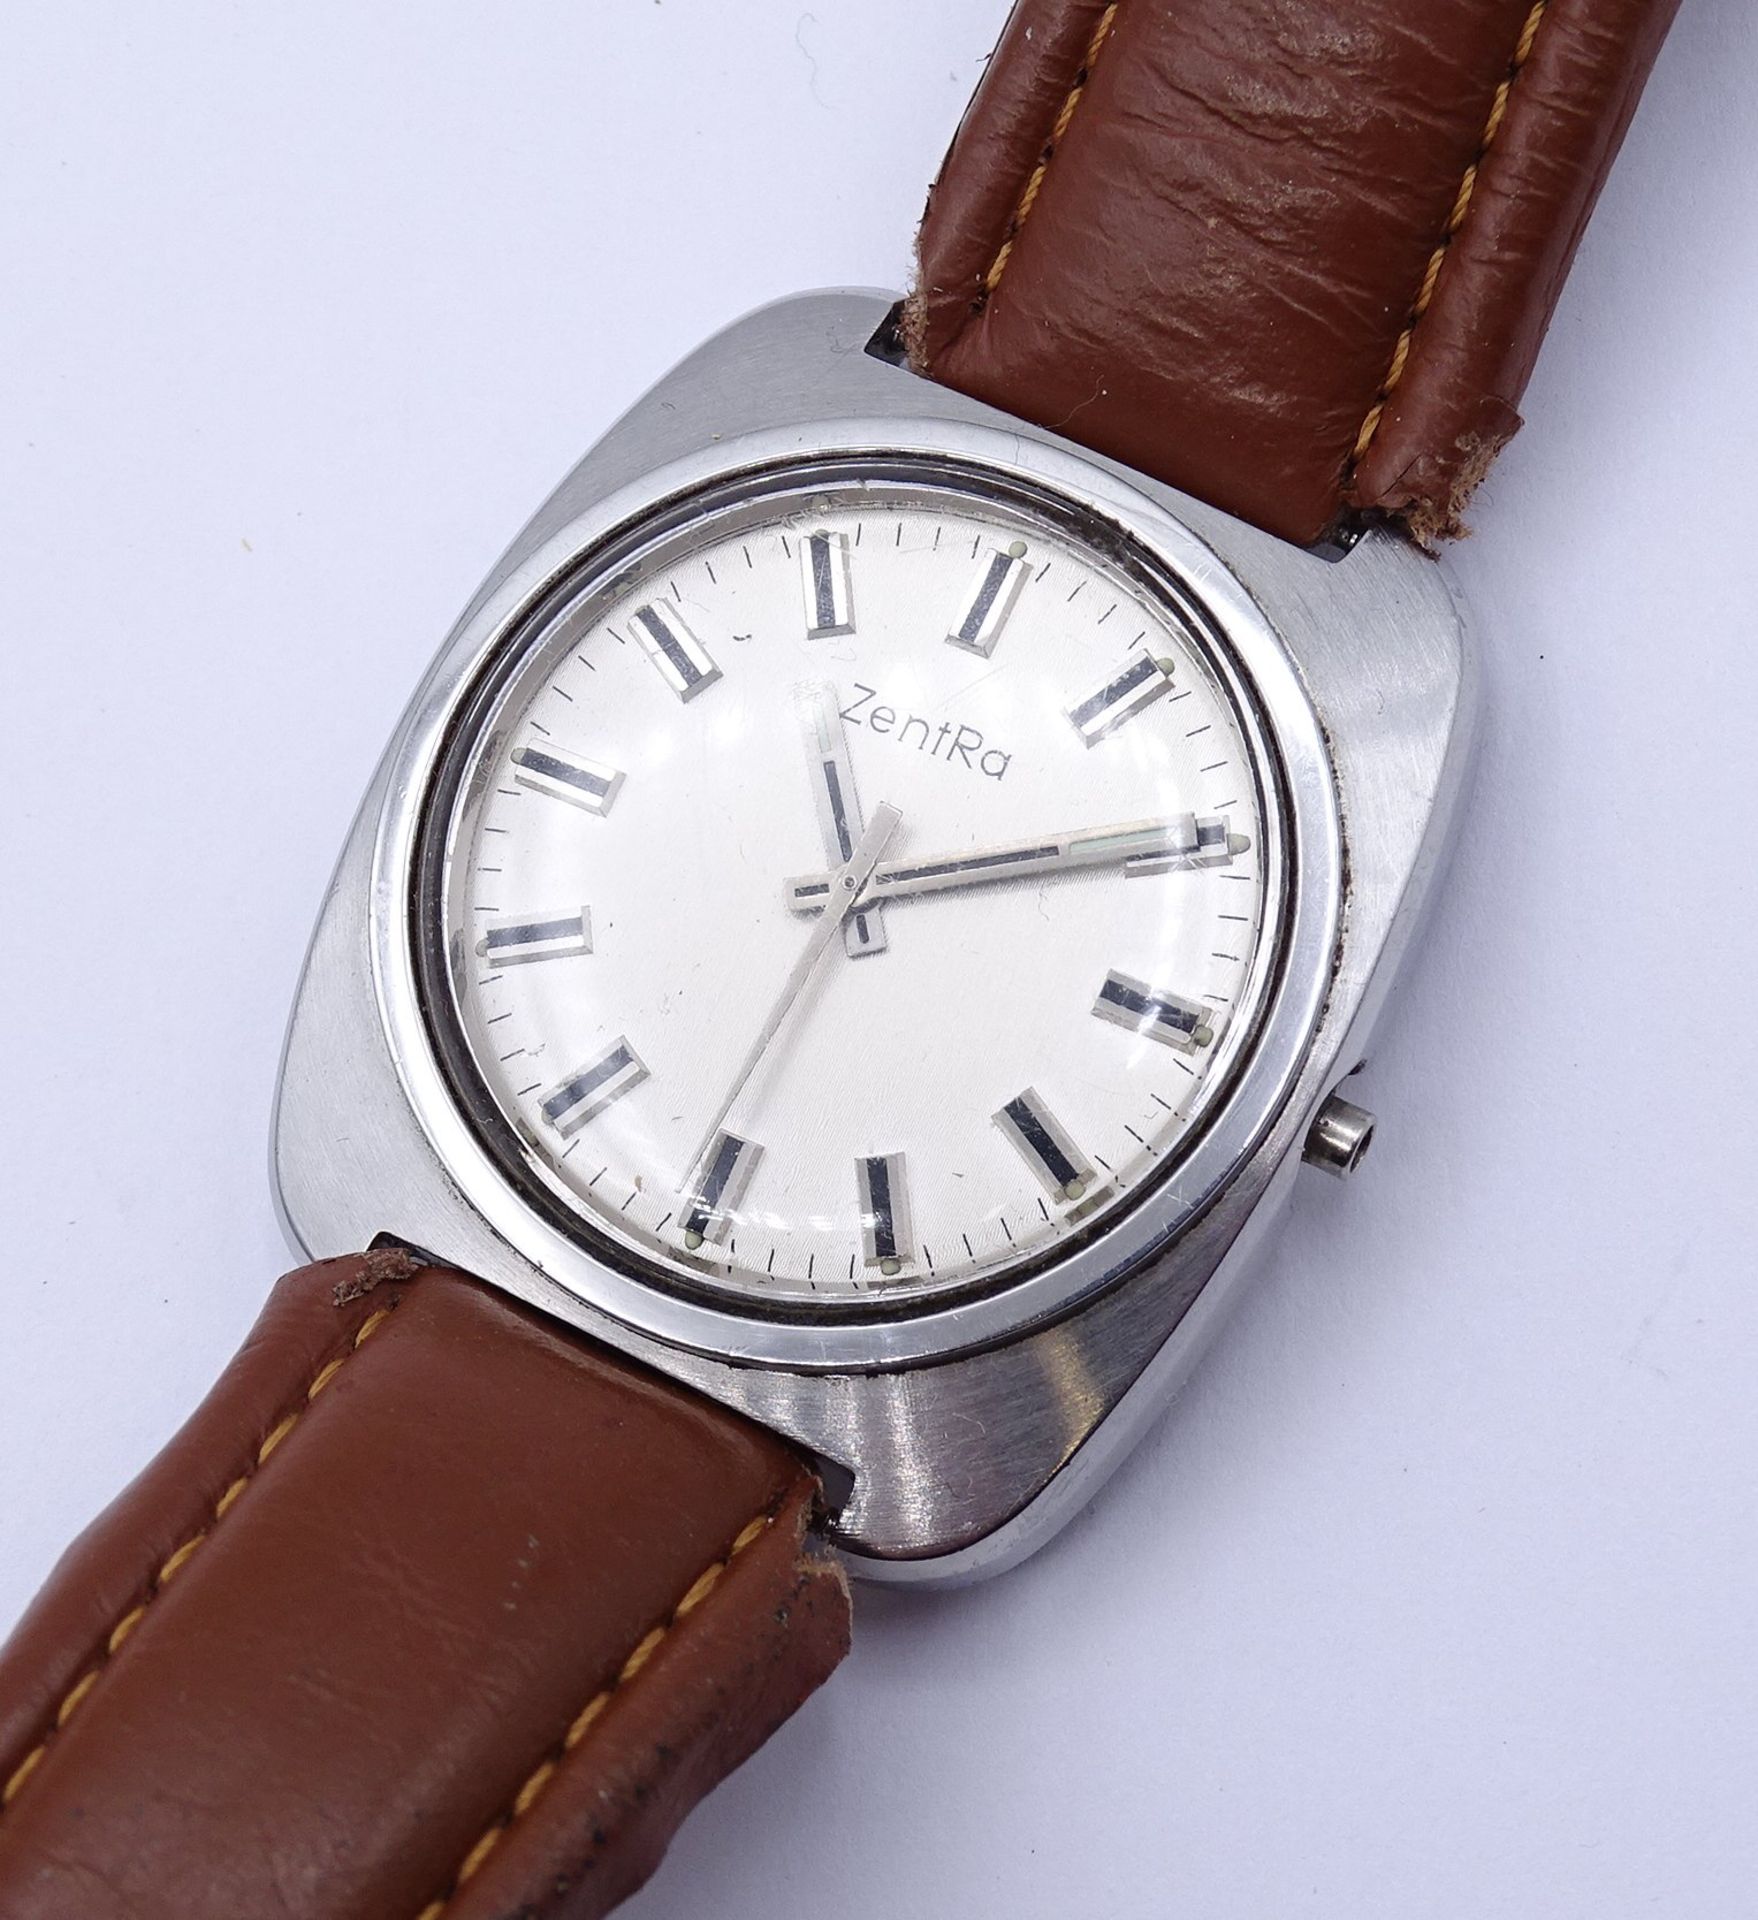 Herren Armbanduhr ZENTRA, mechanisch, Funktion nicht überprüft (Krone fehlt), Gehäuse 36x36mm